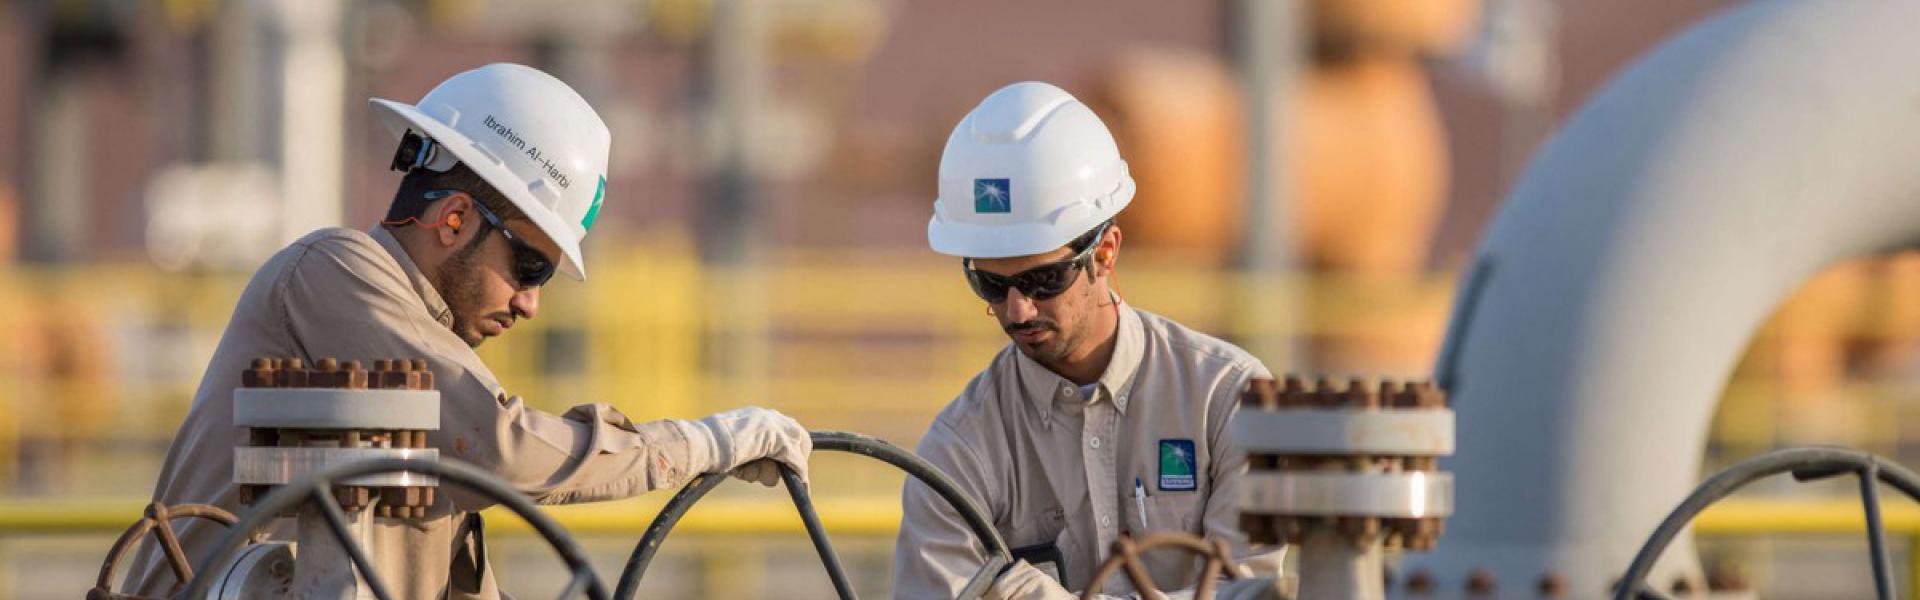 السعودية قطعت أكثر من نصف الطريق لتأسس مستقبل مزدهر في مرحلة ما بعد النفط